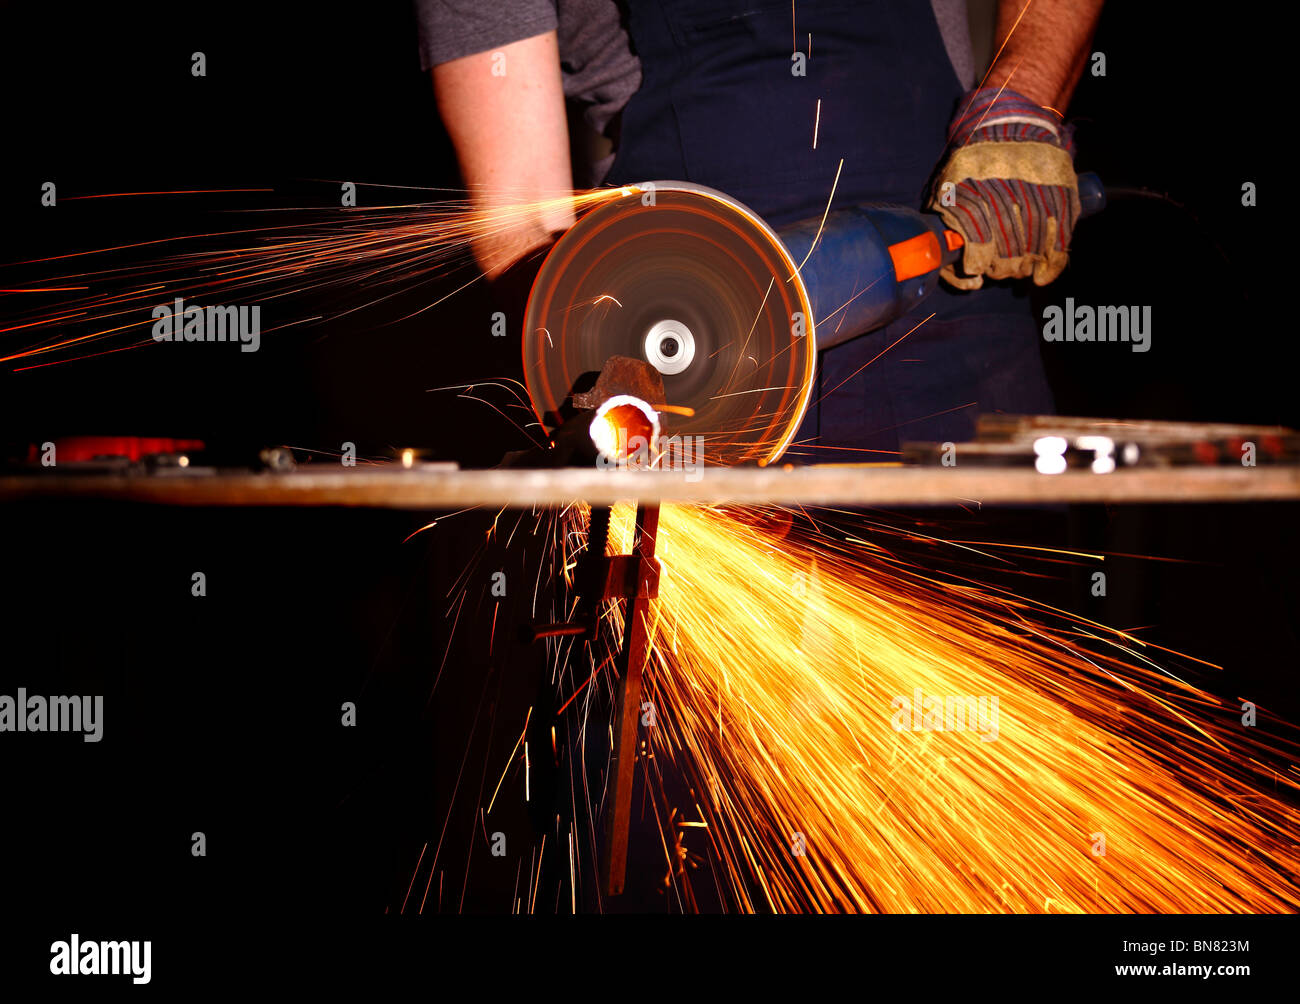 Detalle de la industria, cortar el metal amoladora eléctrica Foto de stock